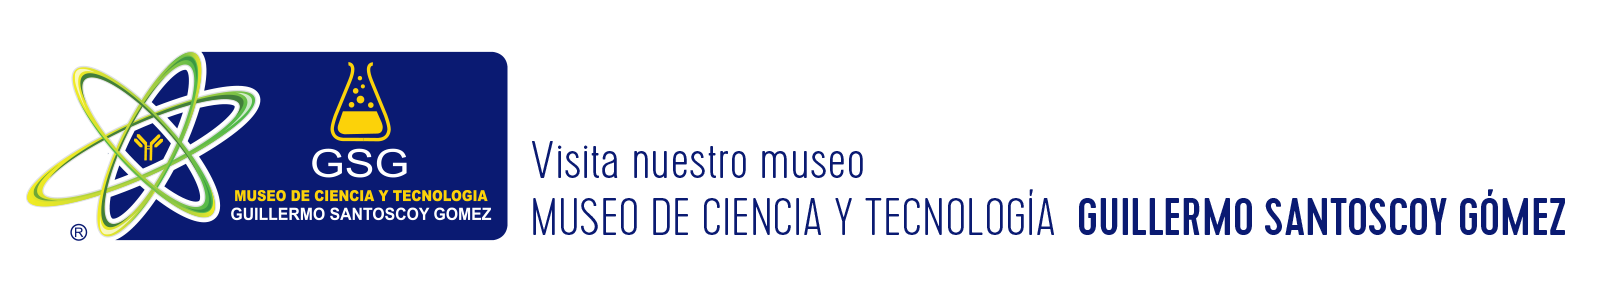 Museo de Ciencia y Tecnología Guillermo Santoscoy Gómez